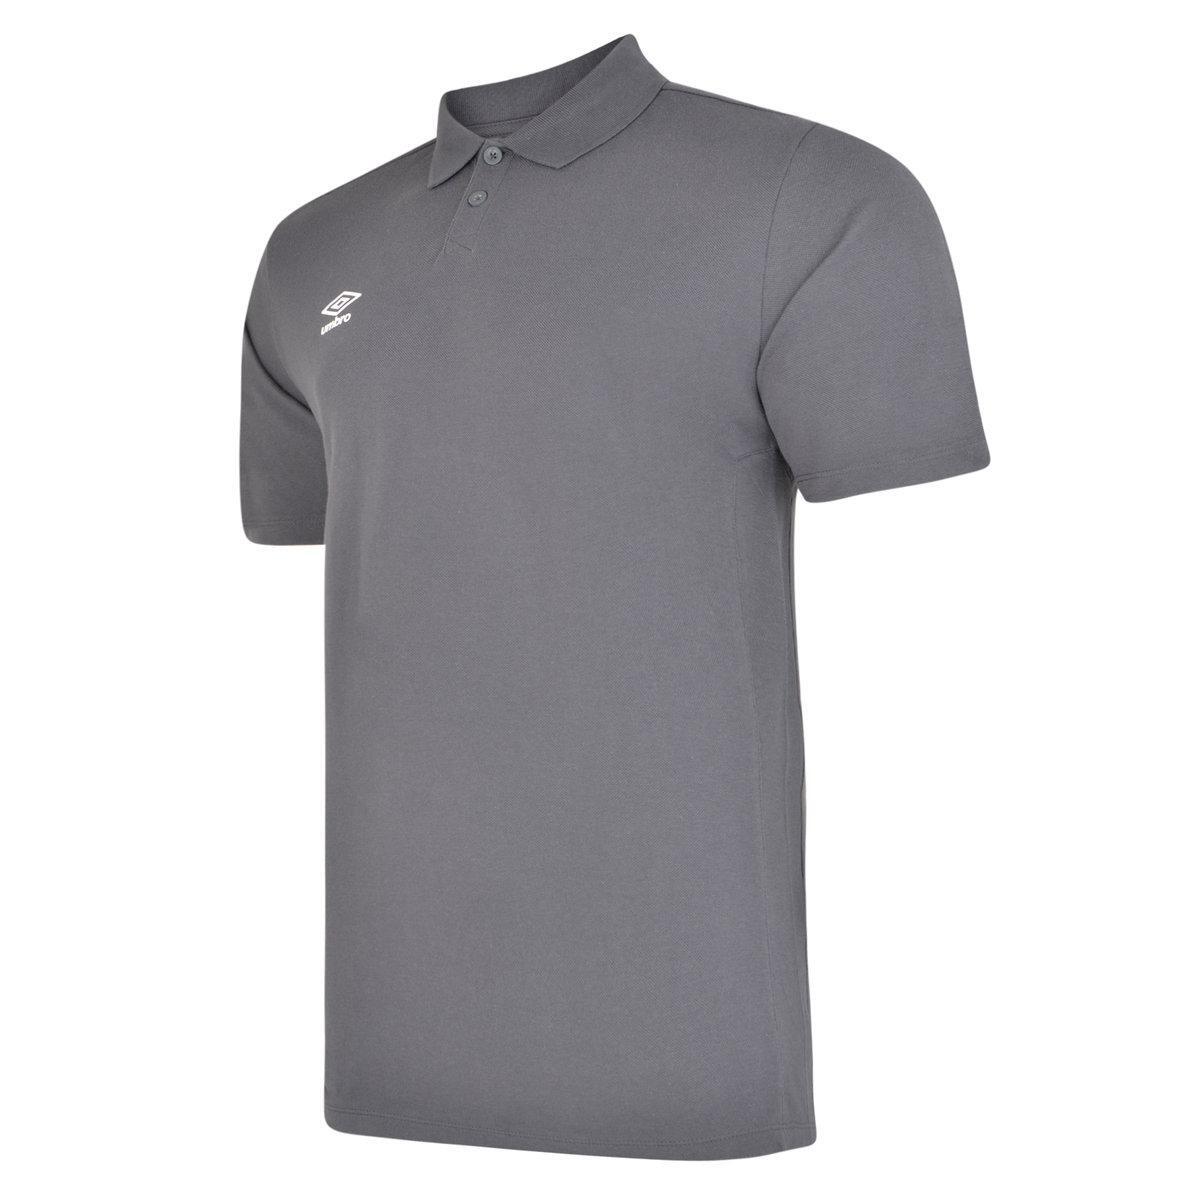 UMBRO Mens Essential Polo Shirt (Carbon/White)